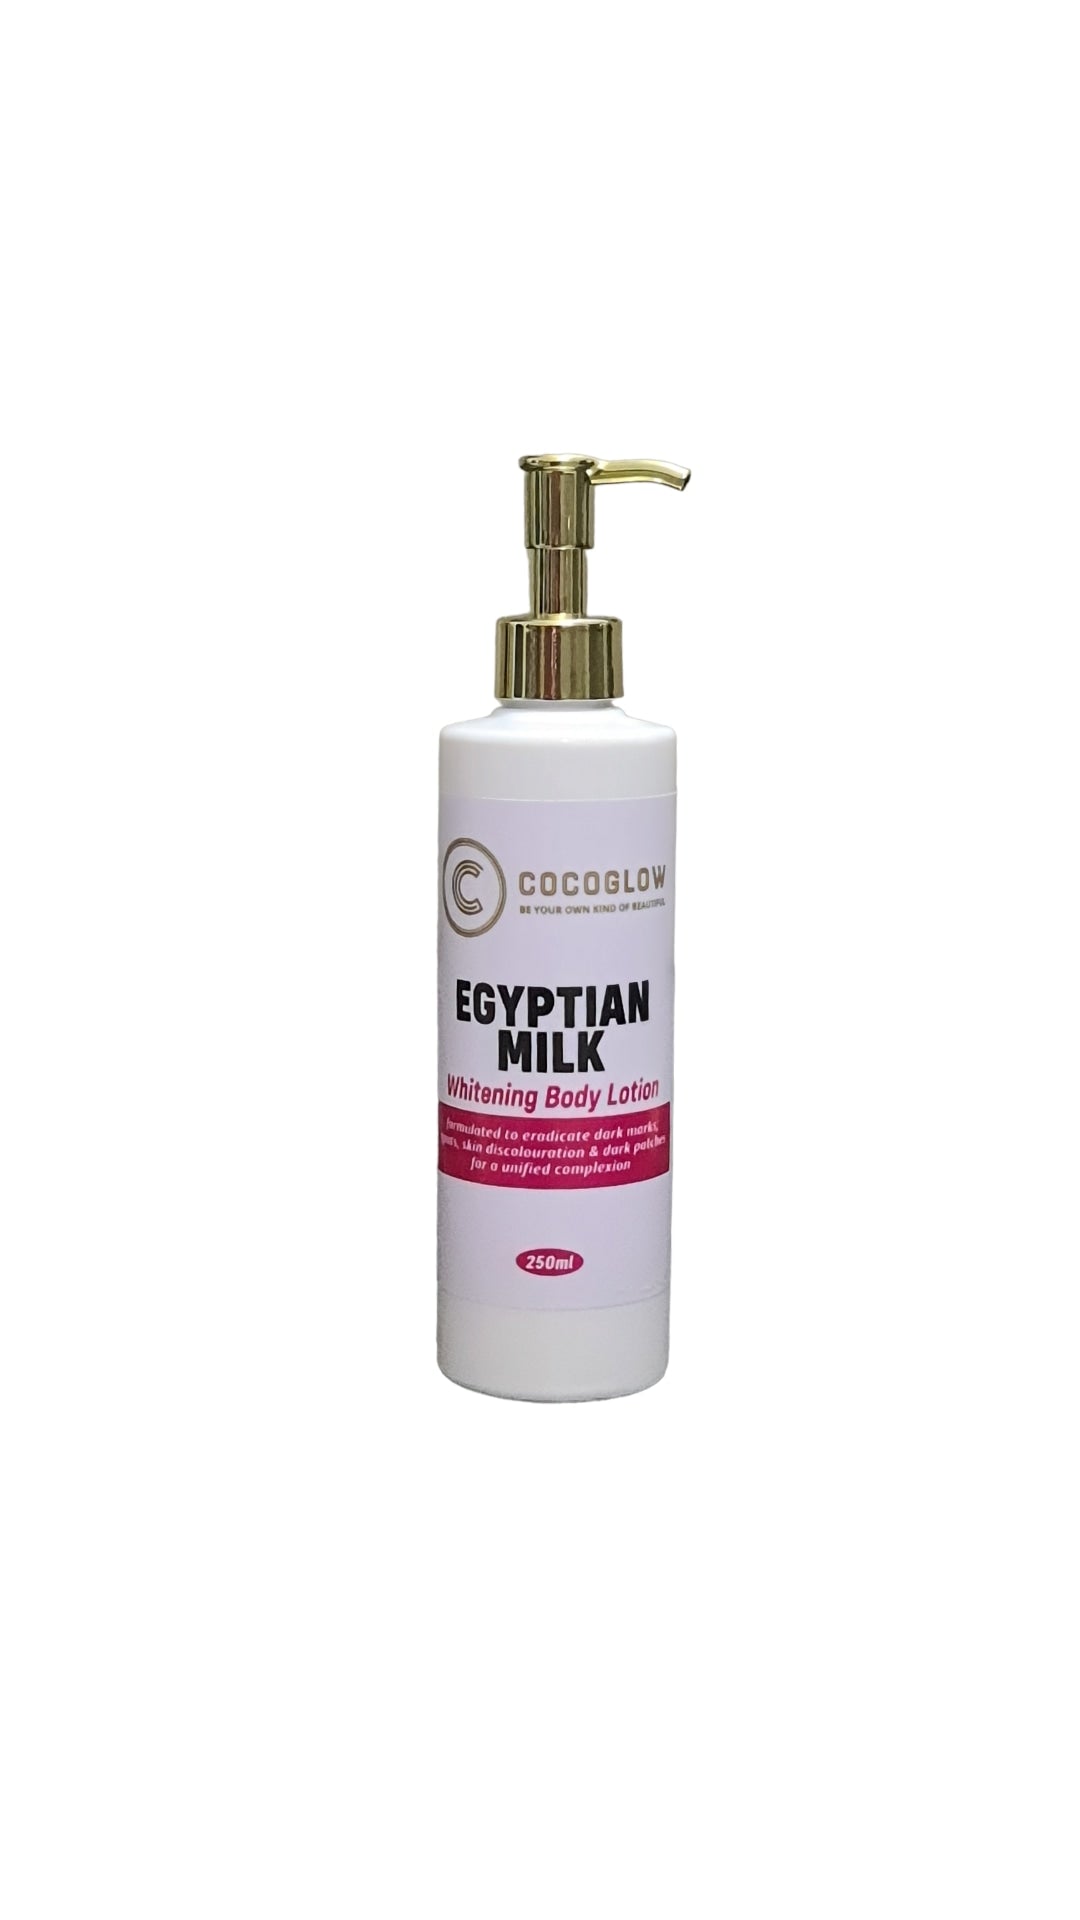 Egyptian milk